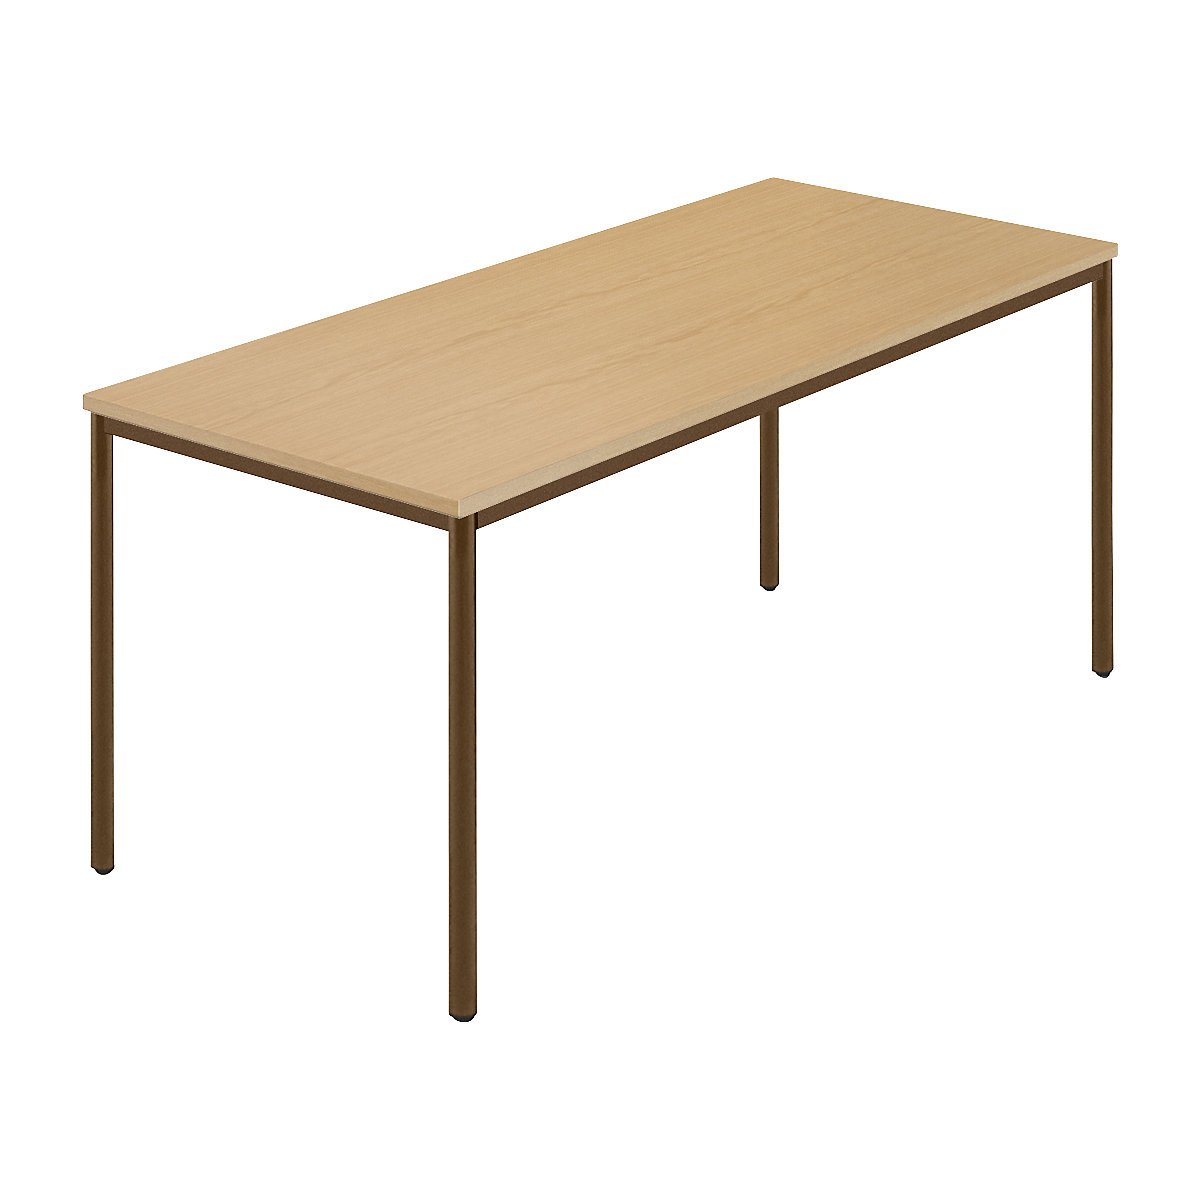 Rechthoekige tafel, ronde buis met coating, b x d = 1600 x 800 mm, naturel beukenhout / bruin-5